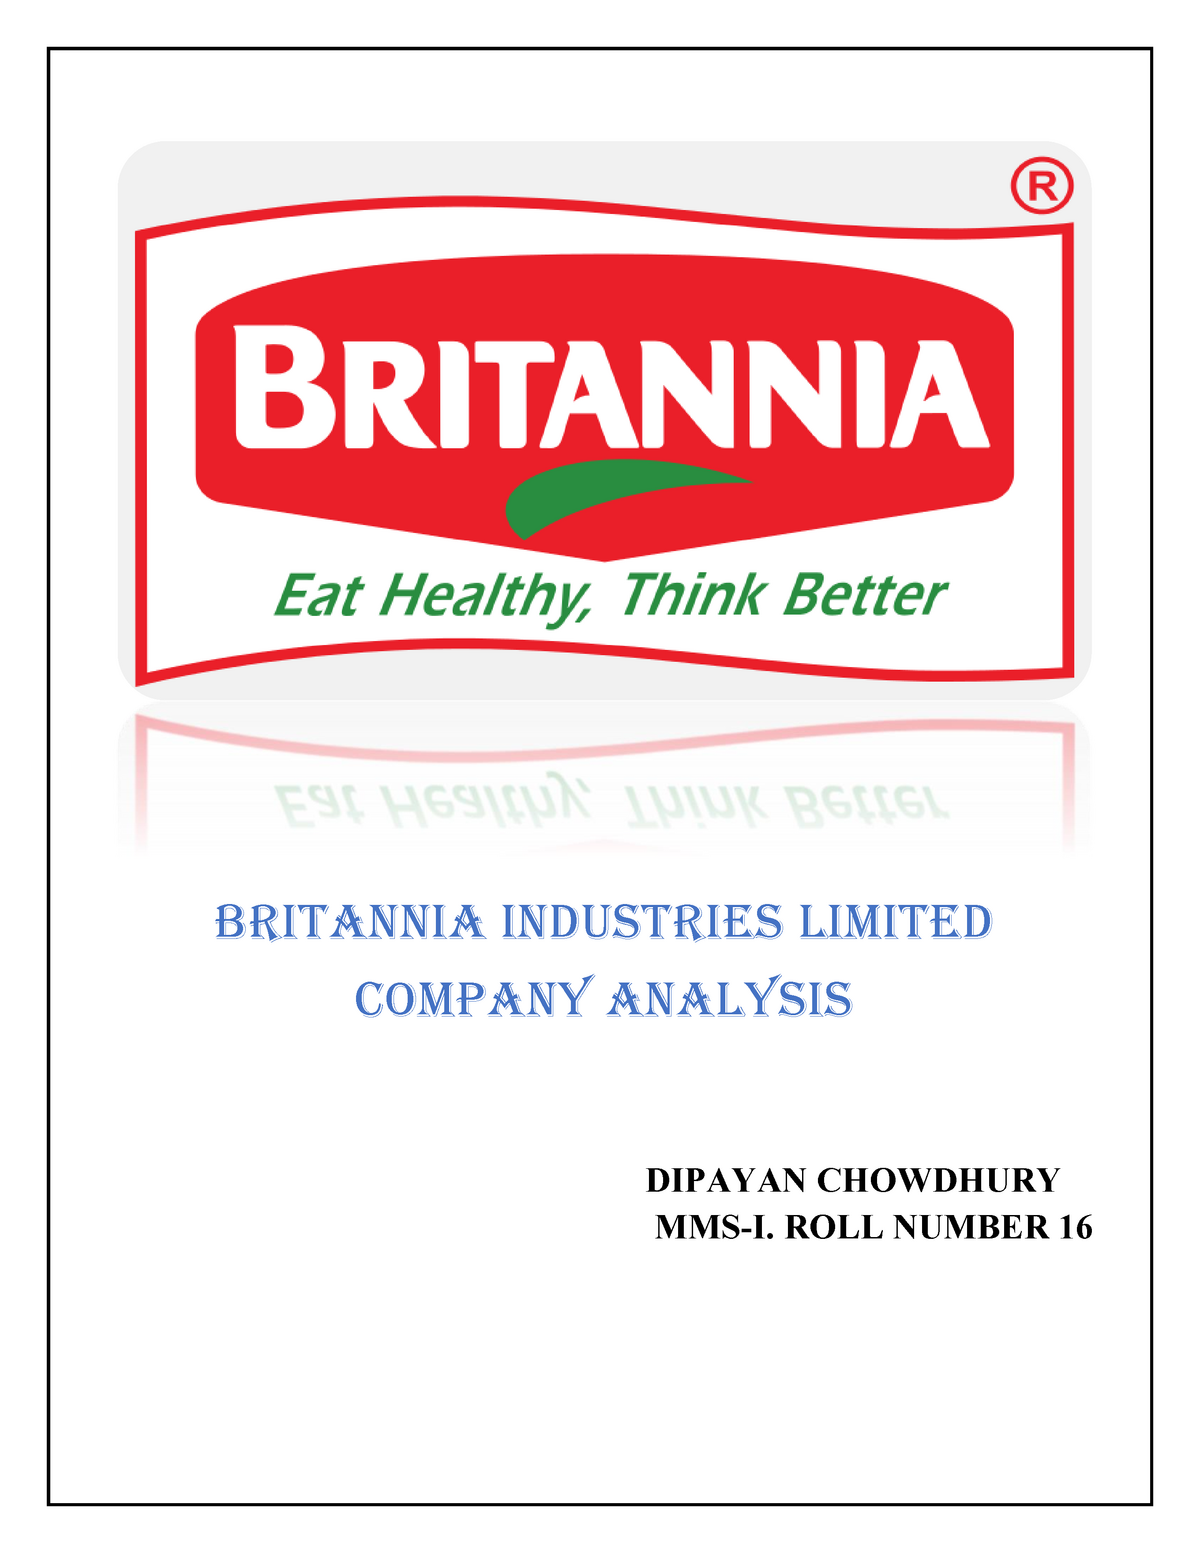 case study on britannia company